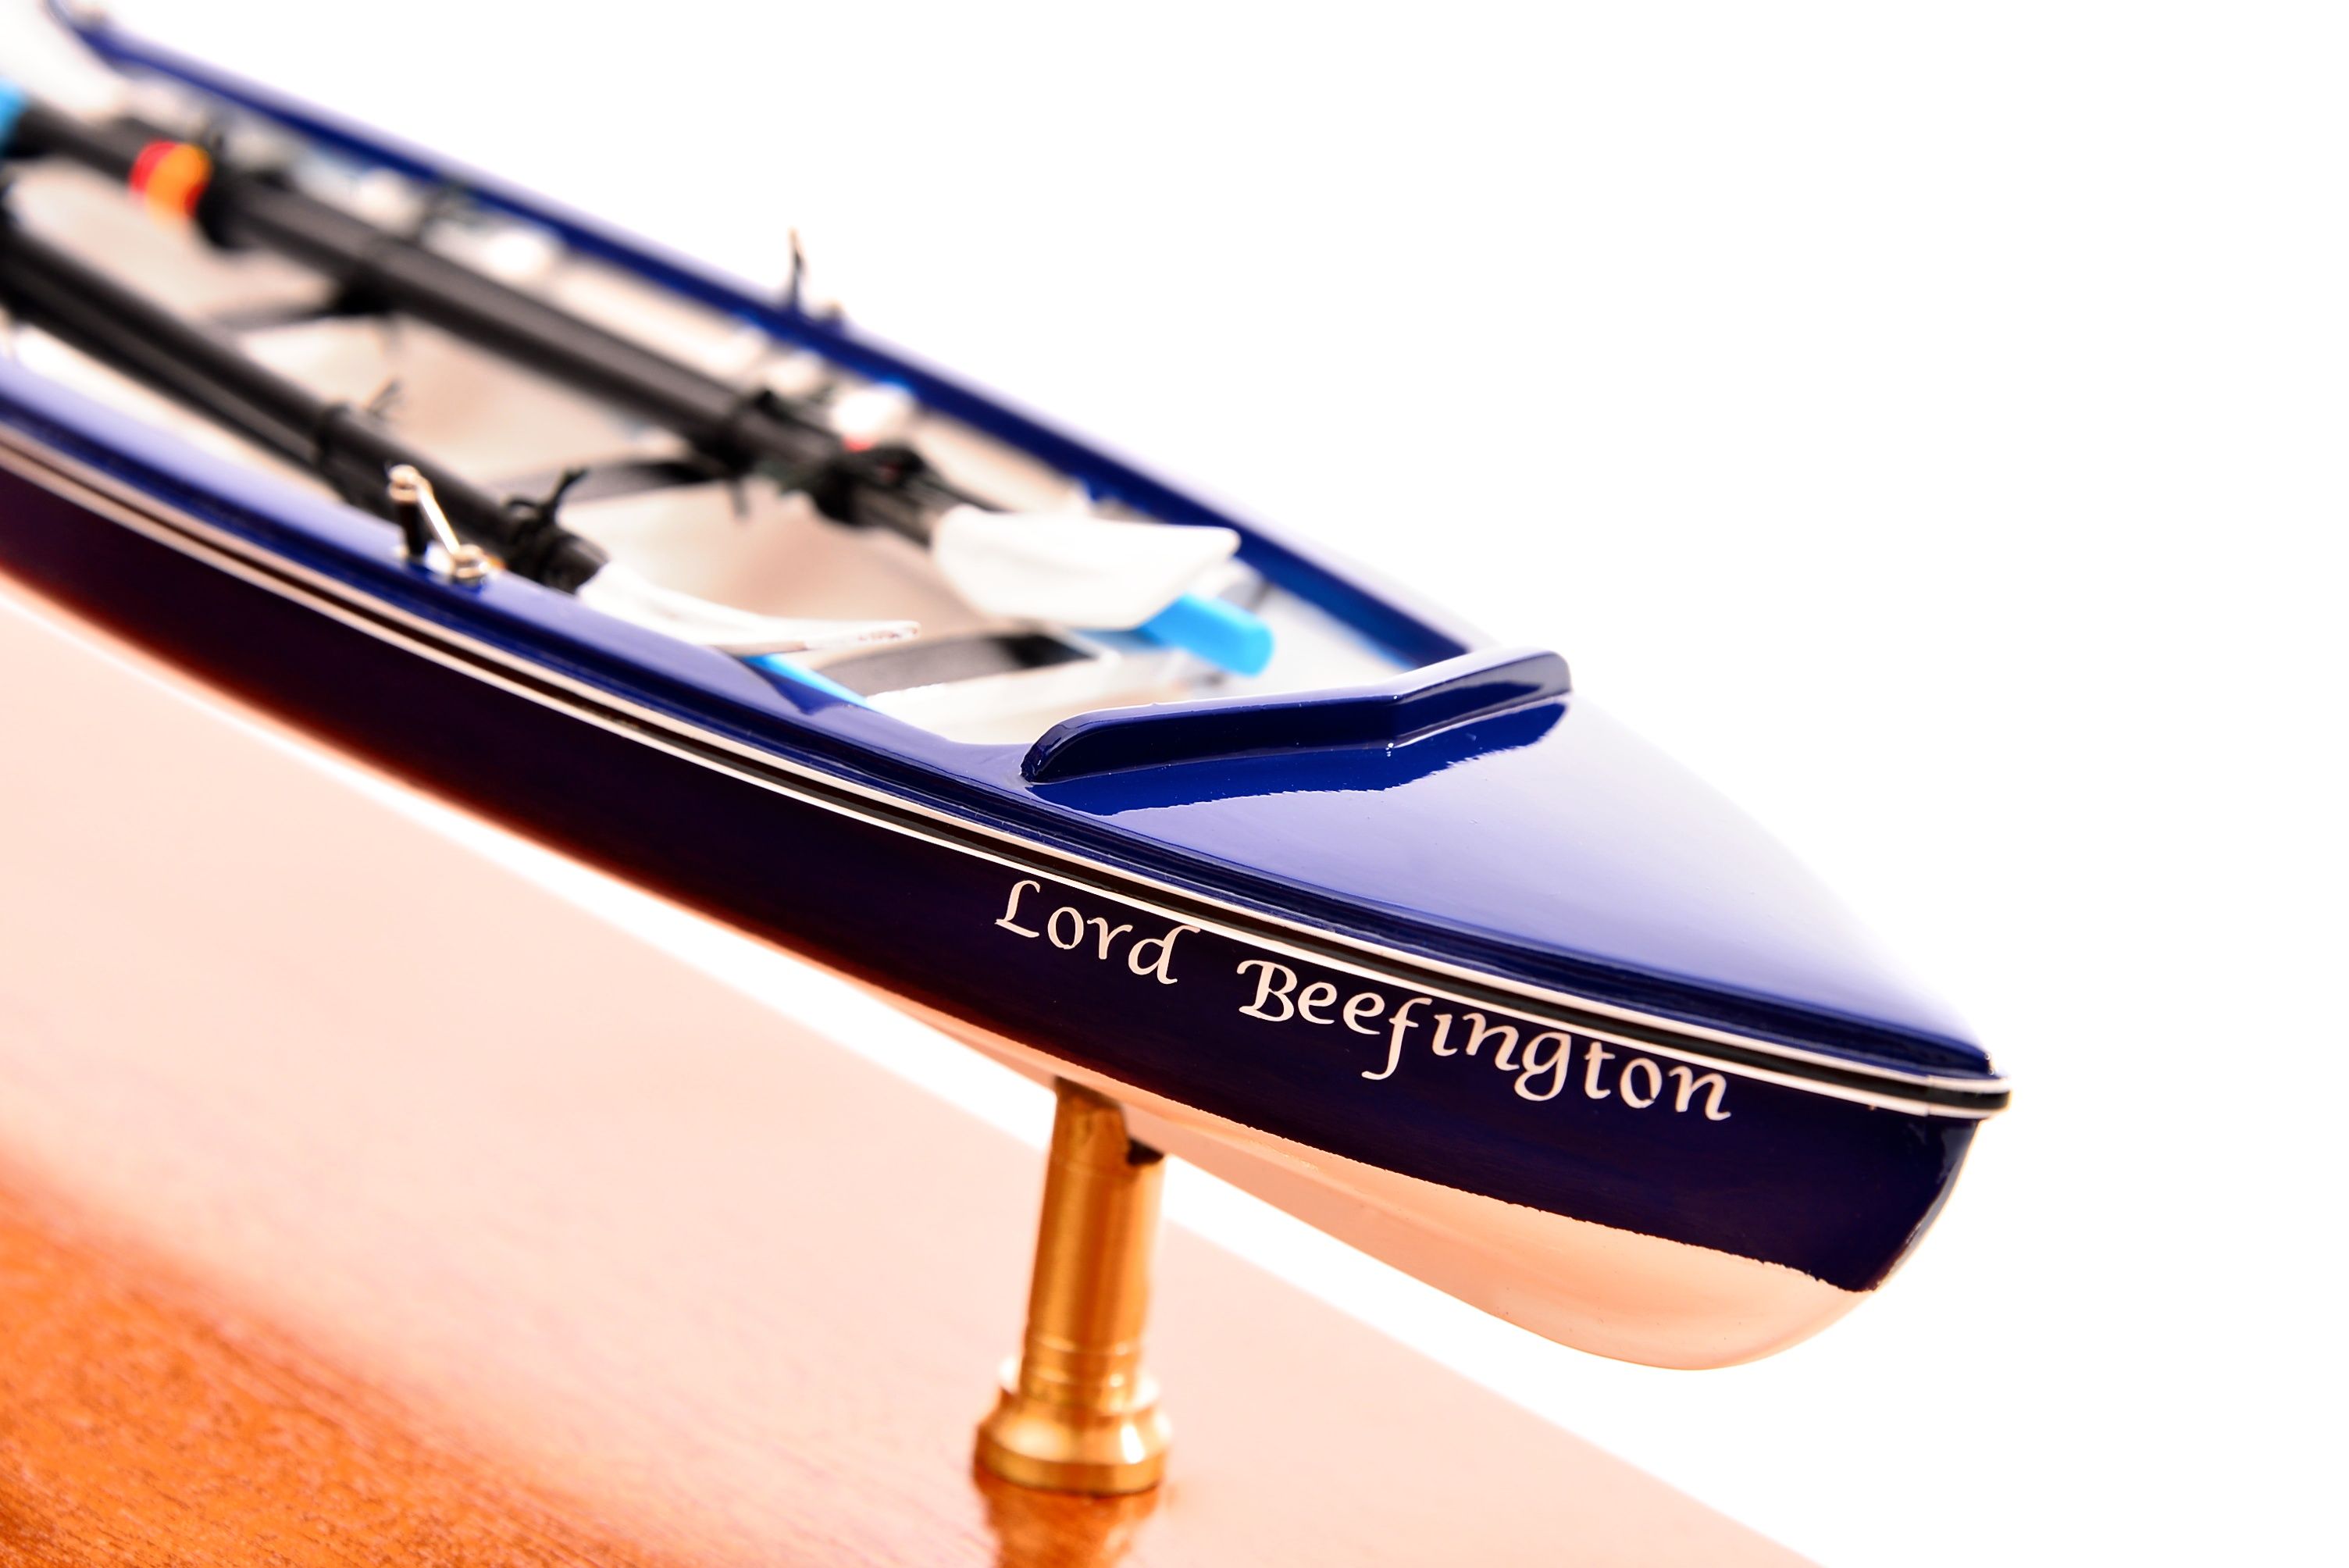 Lord Beefington Rowing Boat